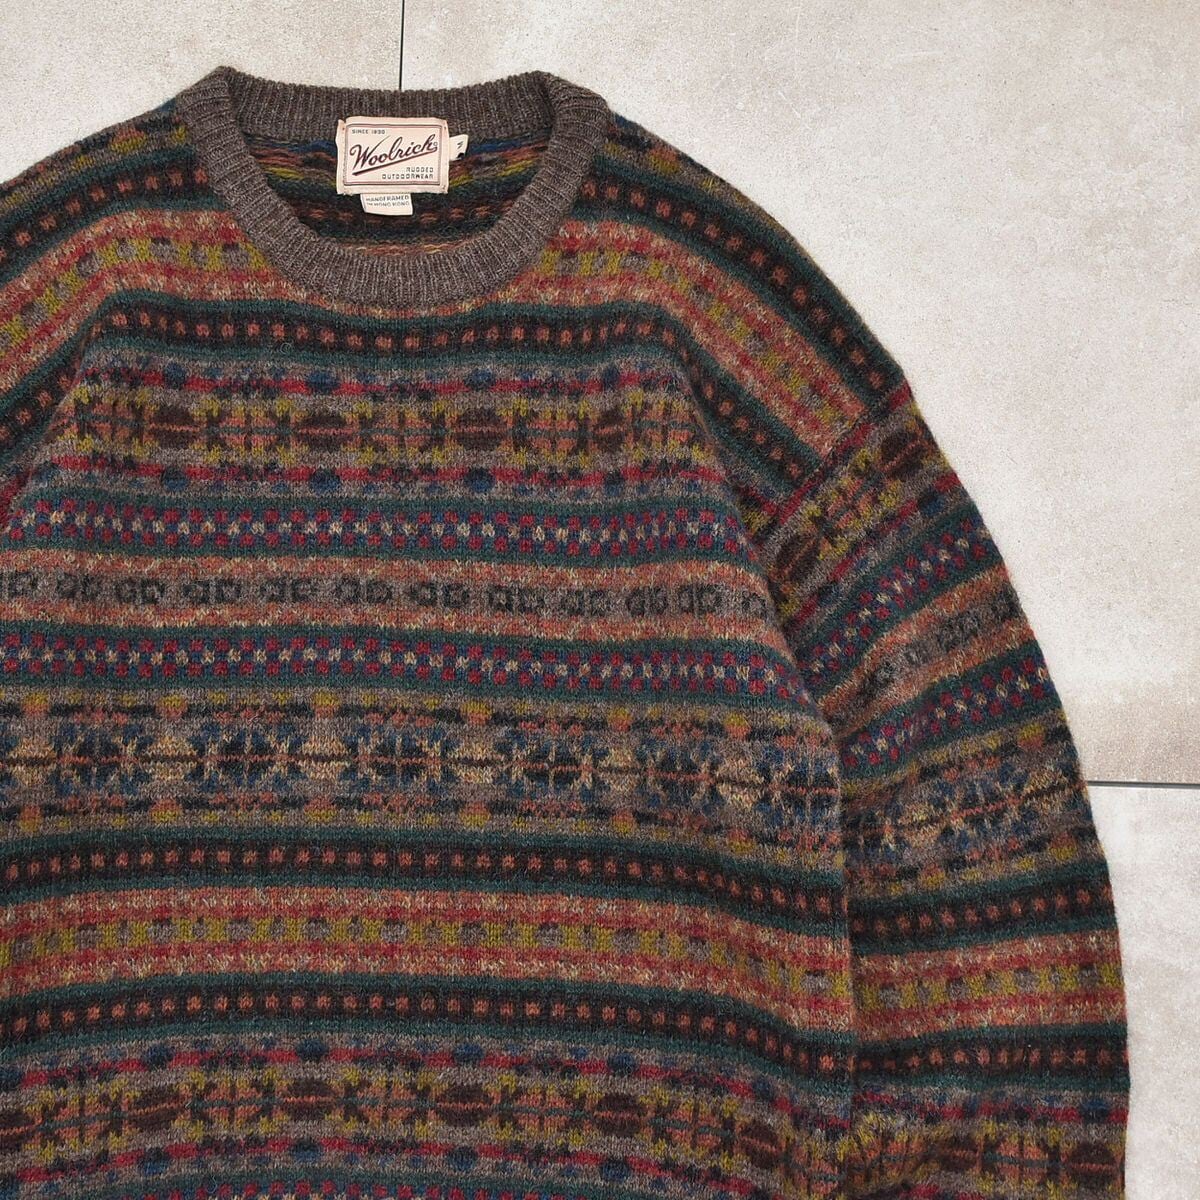 90s Woolrich fair isle pattern sweater